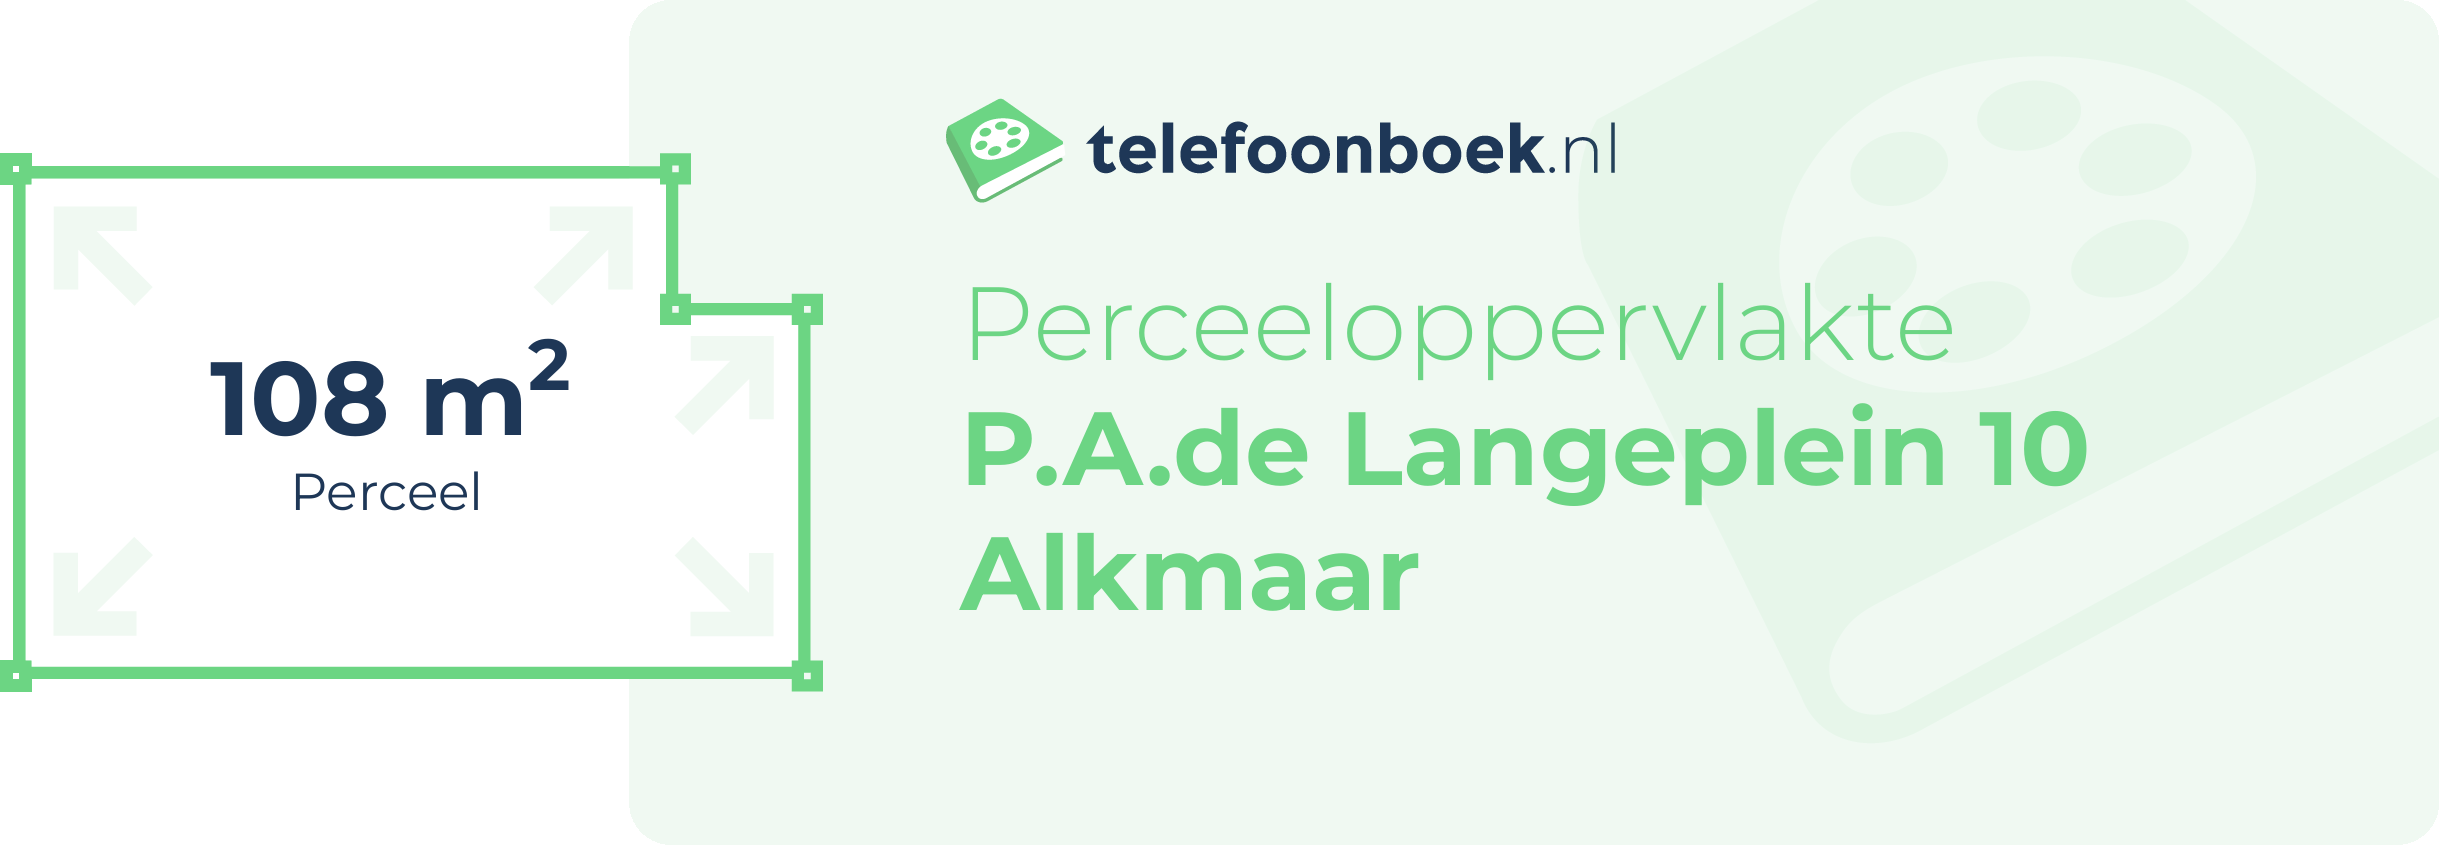 Perceeloppervlakte P.A.de Langeplein 10 Alkmaar